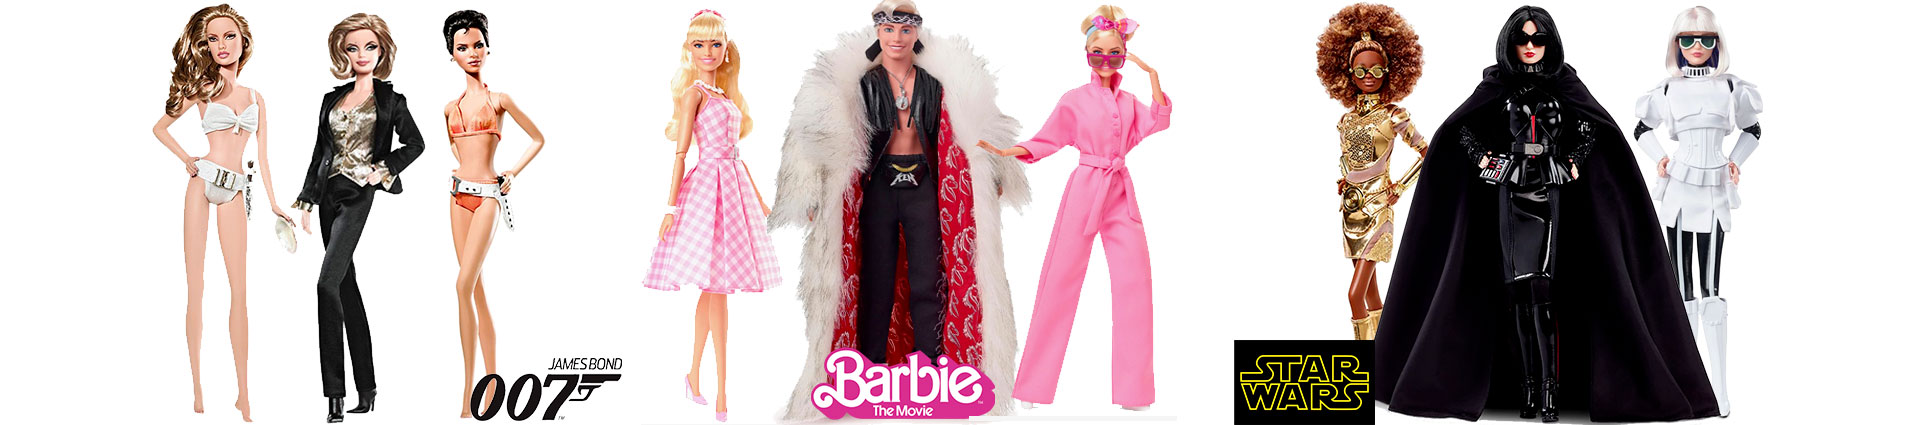 Barbie Collection Films et Series TV